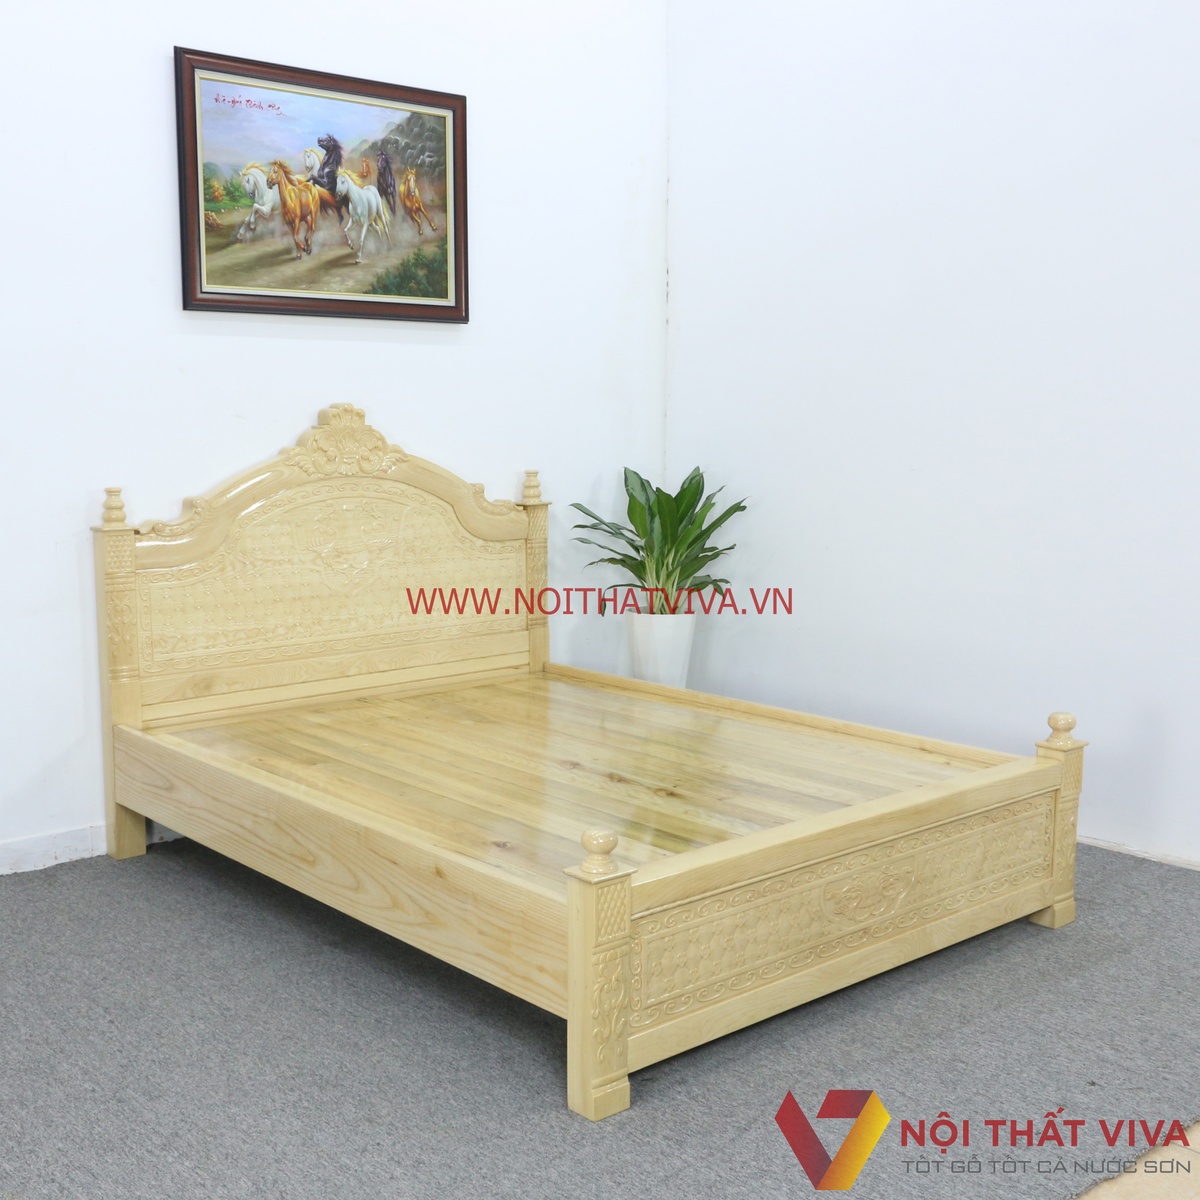 Những mẫu giường ngủ bằng gỗ tự nhiên đẹp nên mua ngay trước khi ...